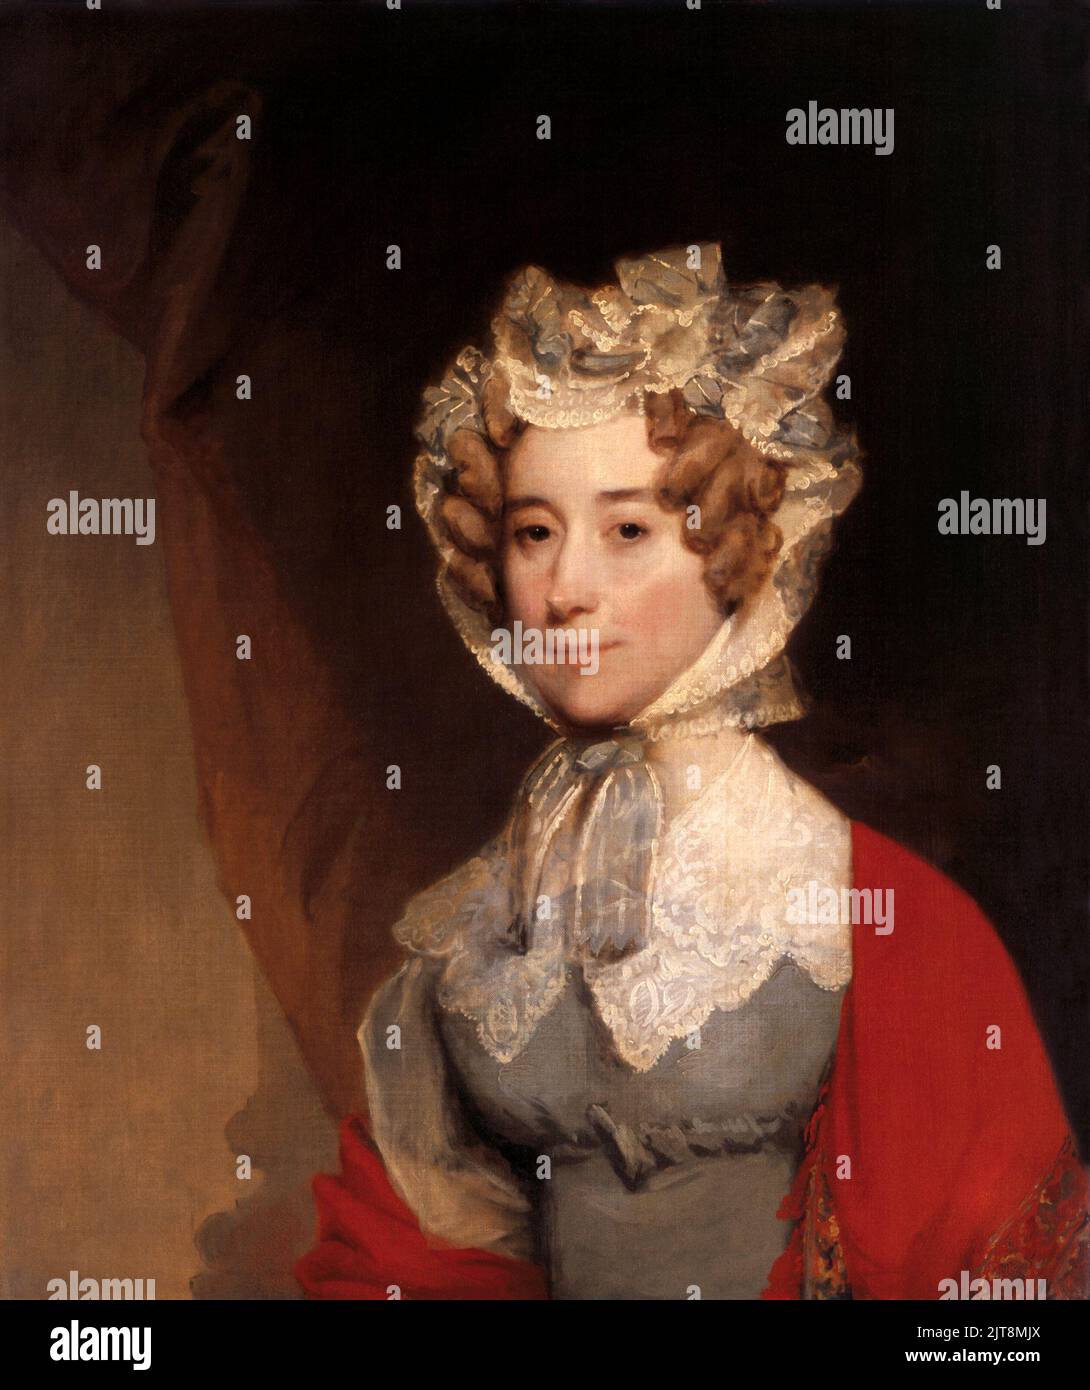 Un portrait de Louisa Catherine Johnson Adams. Elle était la femme et la première dame de John Quincy Adams, le président des États-Unis en 6th. La peinture est de Gilbert Stuart, 1821-26 Banque D'Images